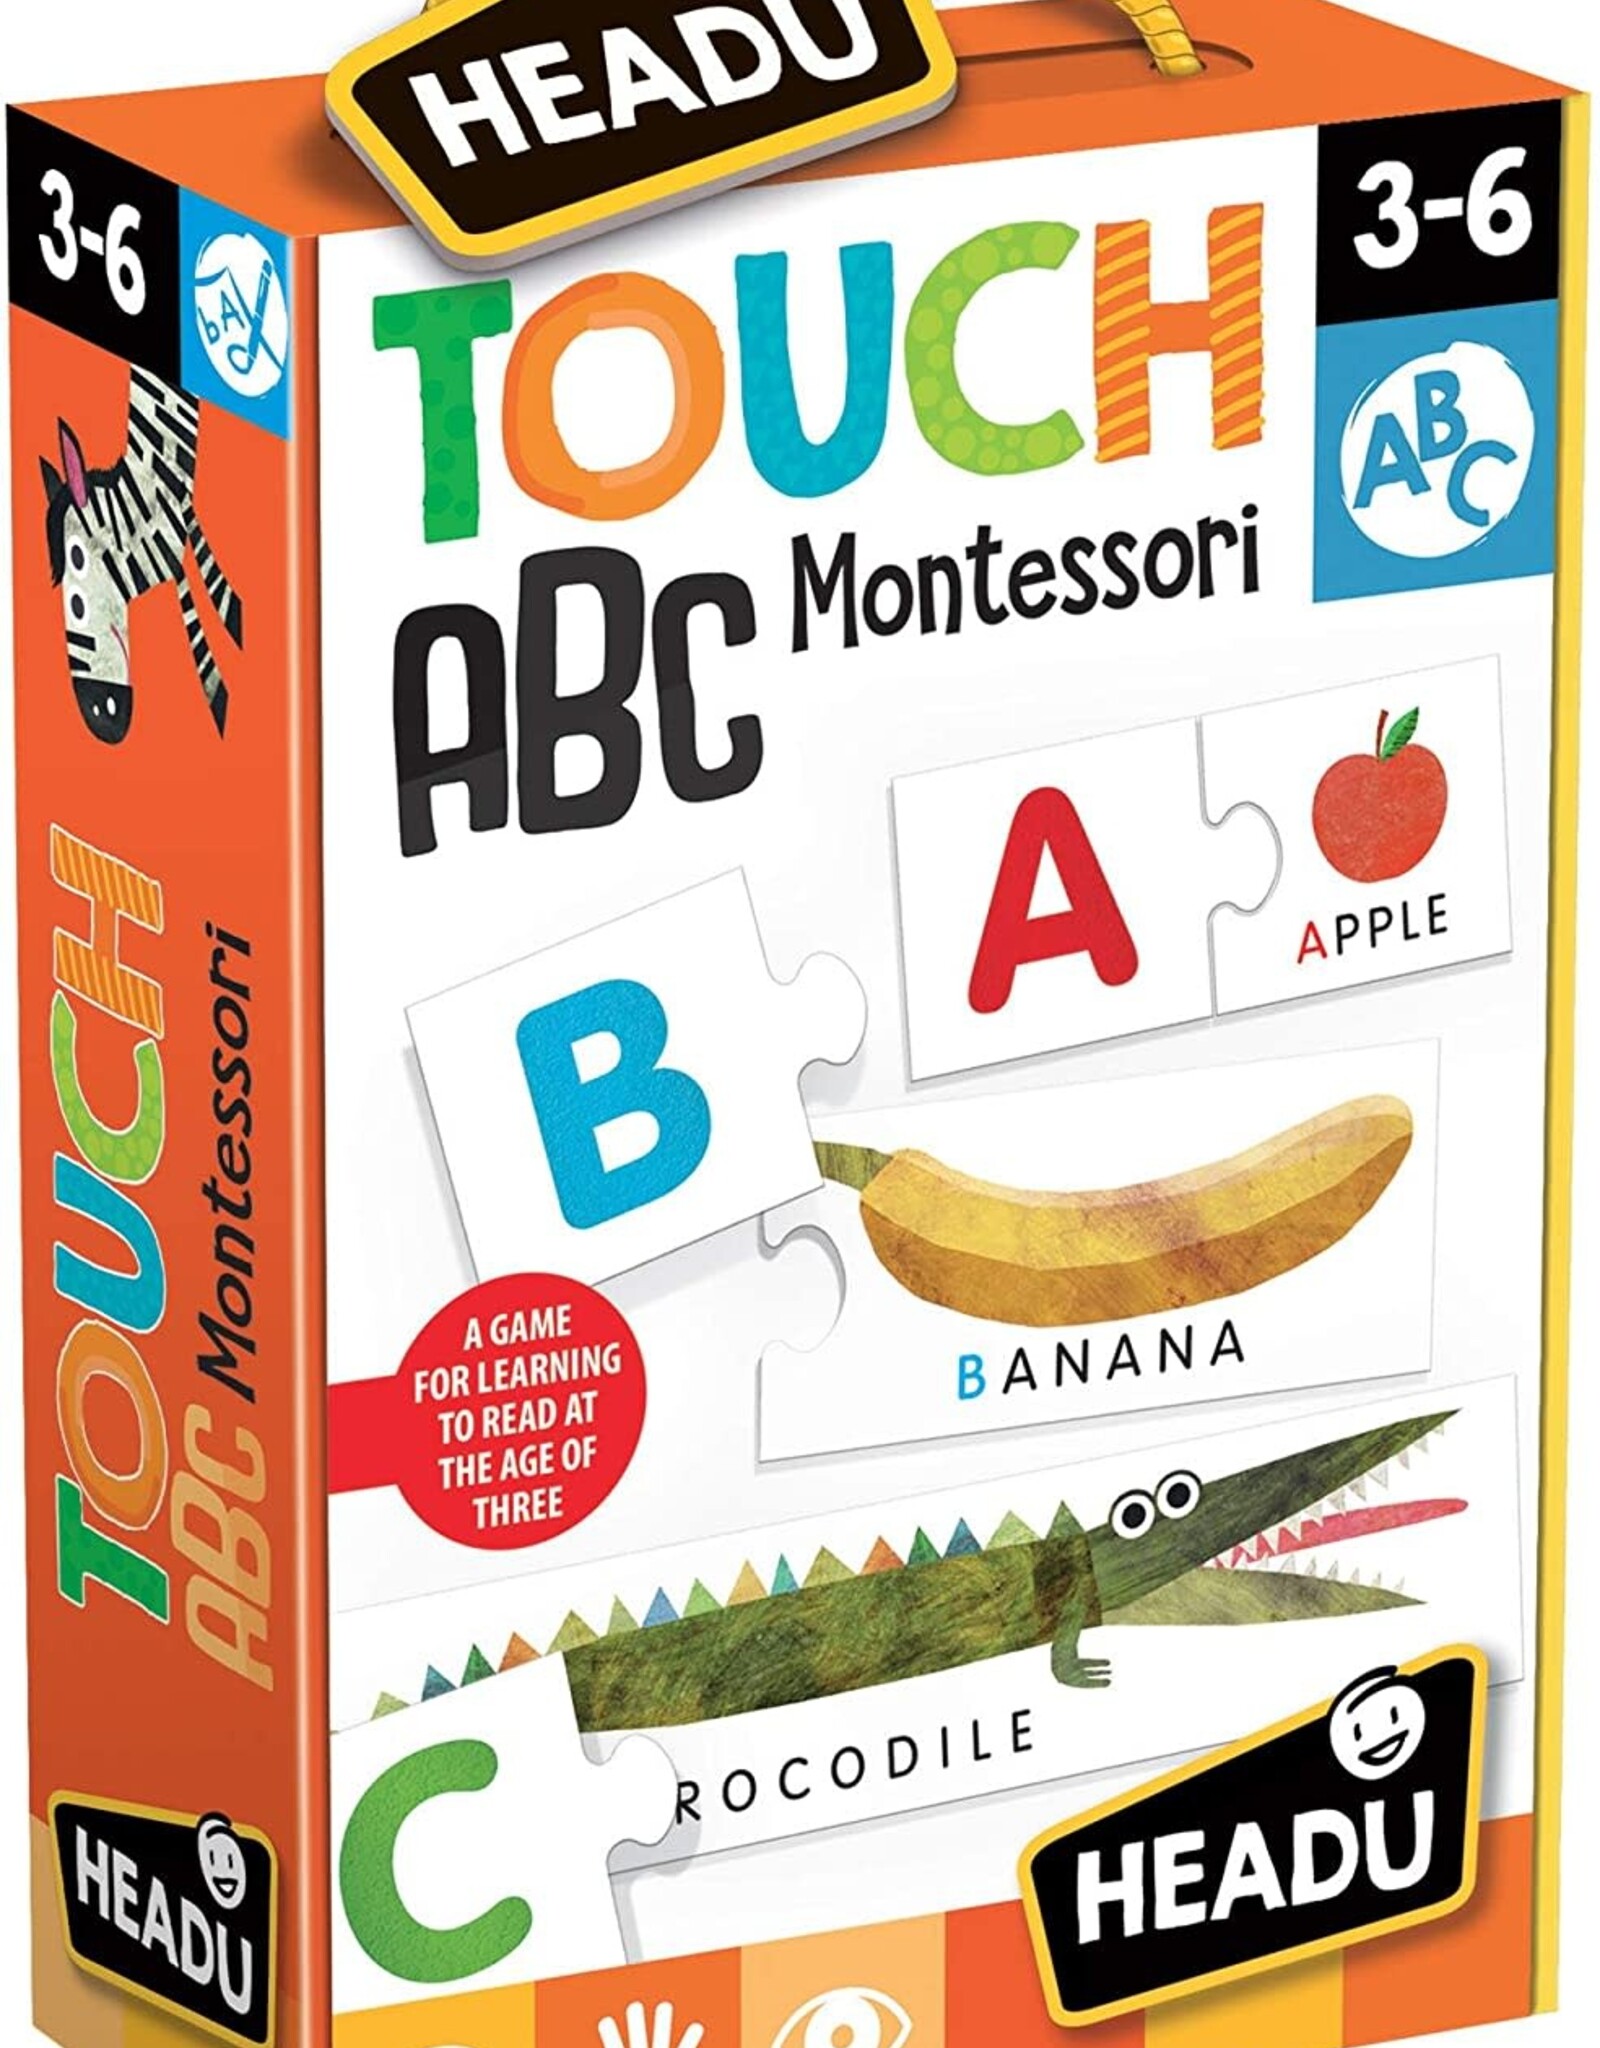 Montessori Touch ABC